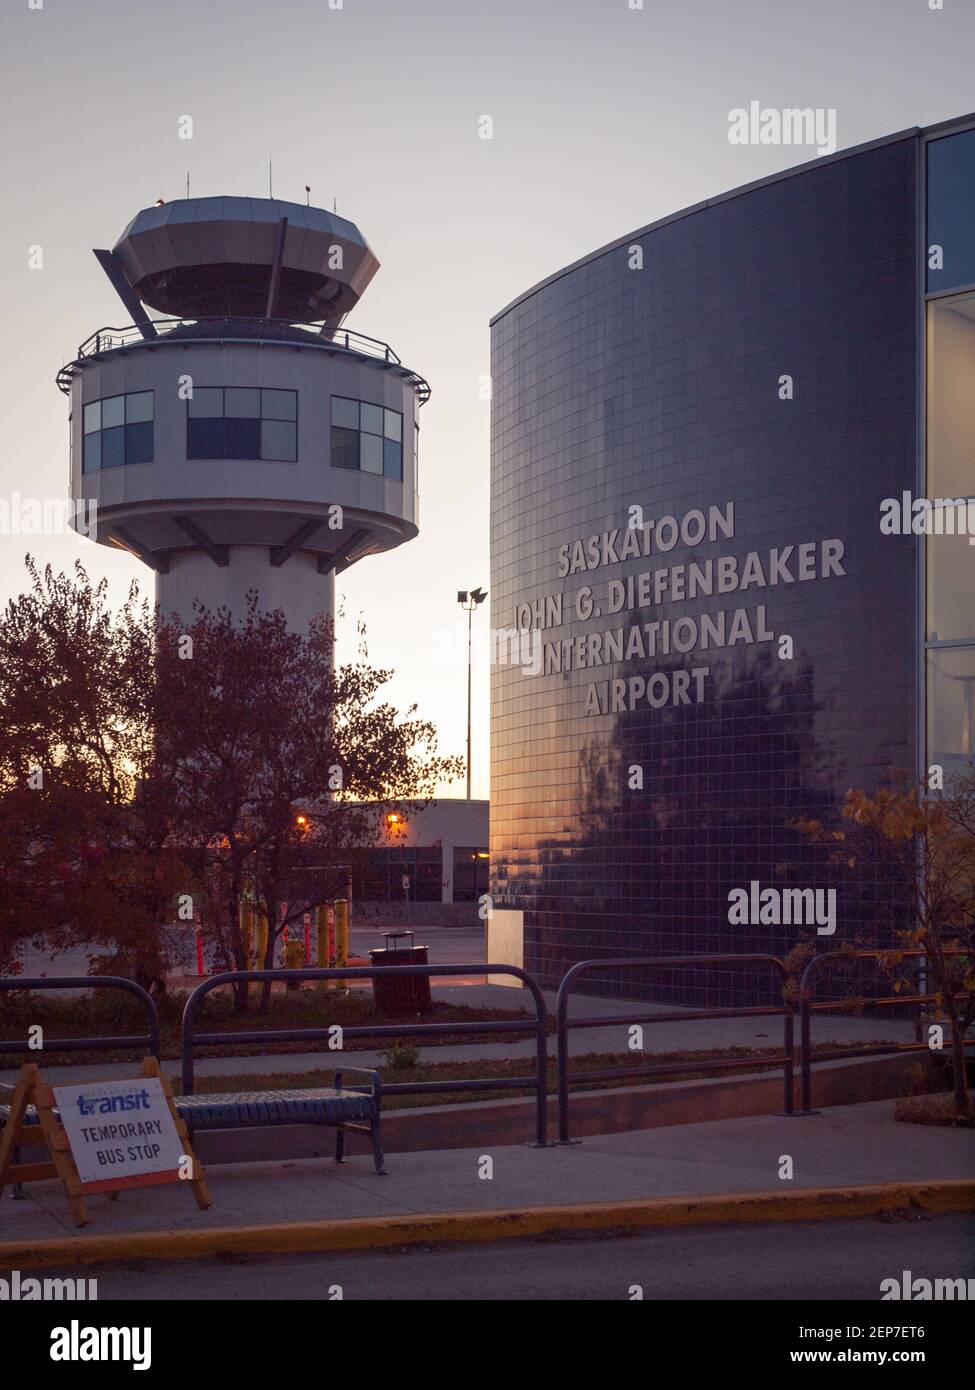 Vue sur la tour de contrôle et l'aérogare de l'aéroport international John G. Diefenbaker de Saskatoon, à Saskatoon (Saskatchewan), Canada. Banque D'Images